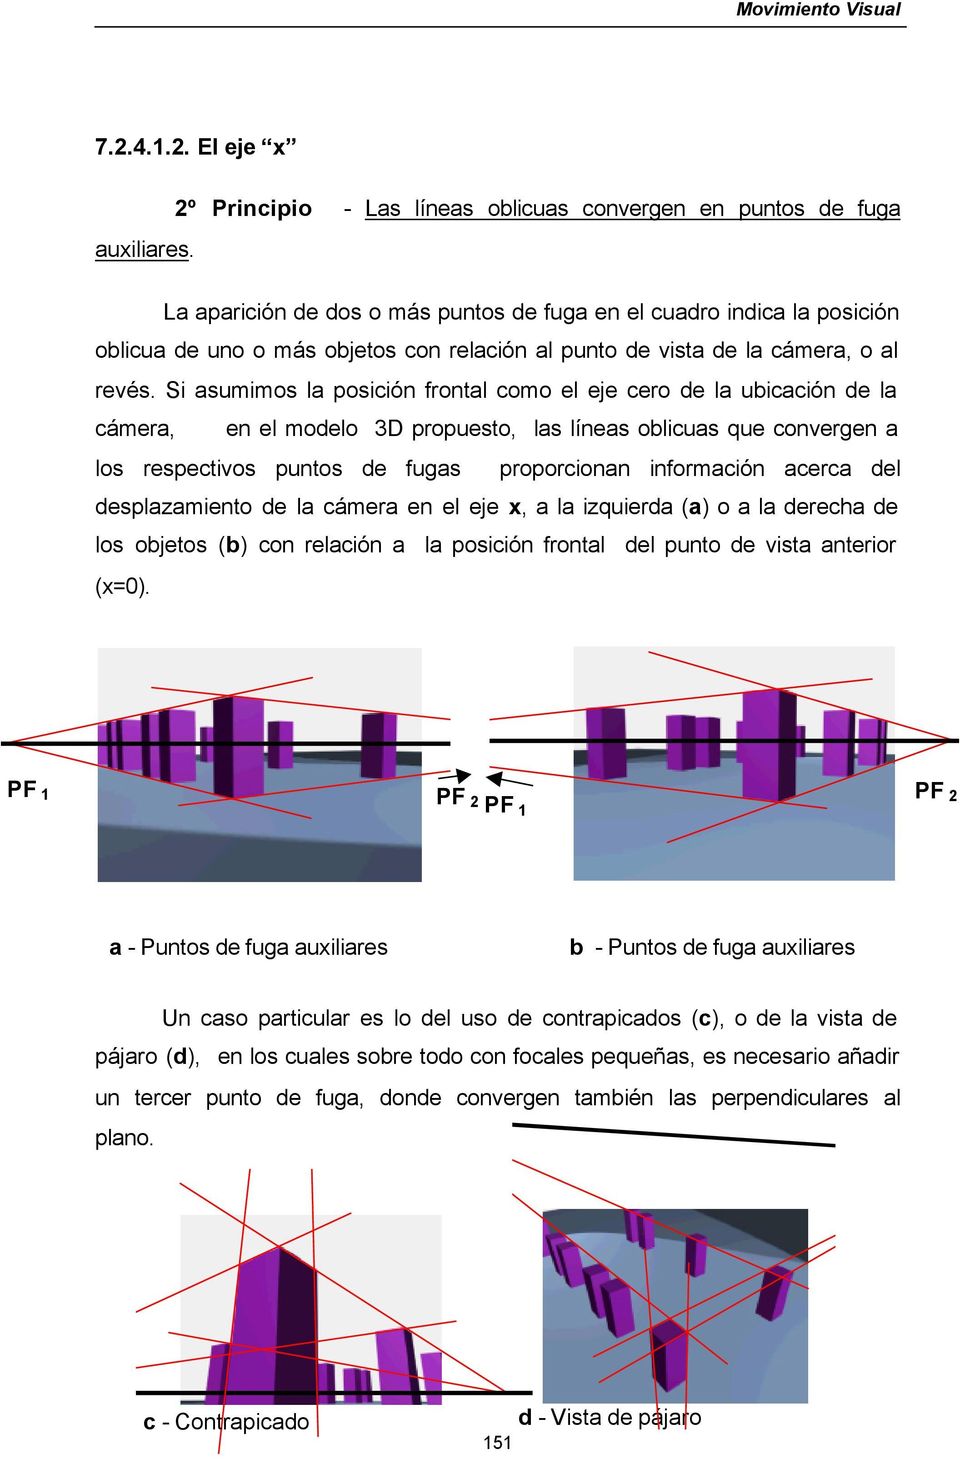 Si asumimos la posición frontal como el eje cero de la ubicación de la cámera, en el modelo 3D propuesto, las líneas oblicuas que convergen a los respectivos puntos de fugas proporcionan información